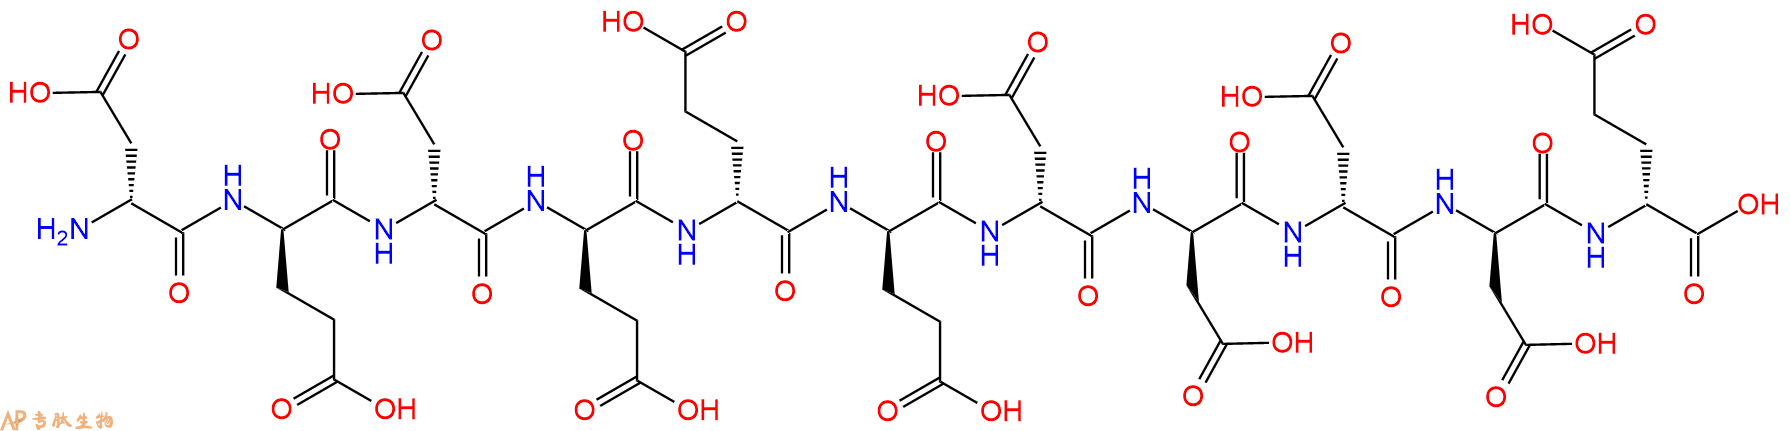 专肽生物产品H2N-DAsp-DGlu-DAsp-DGlu-DGlu-DGlu-DAsp-DAsp-DAsp-D